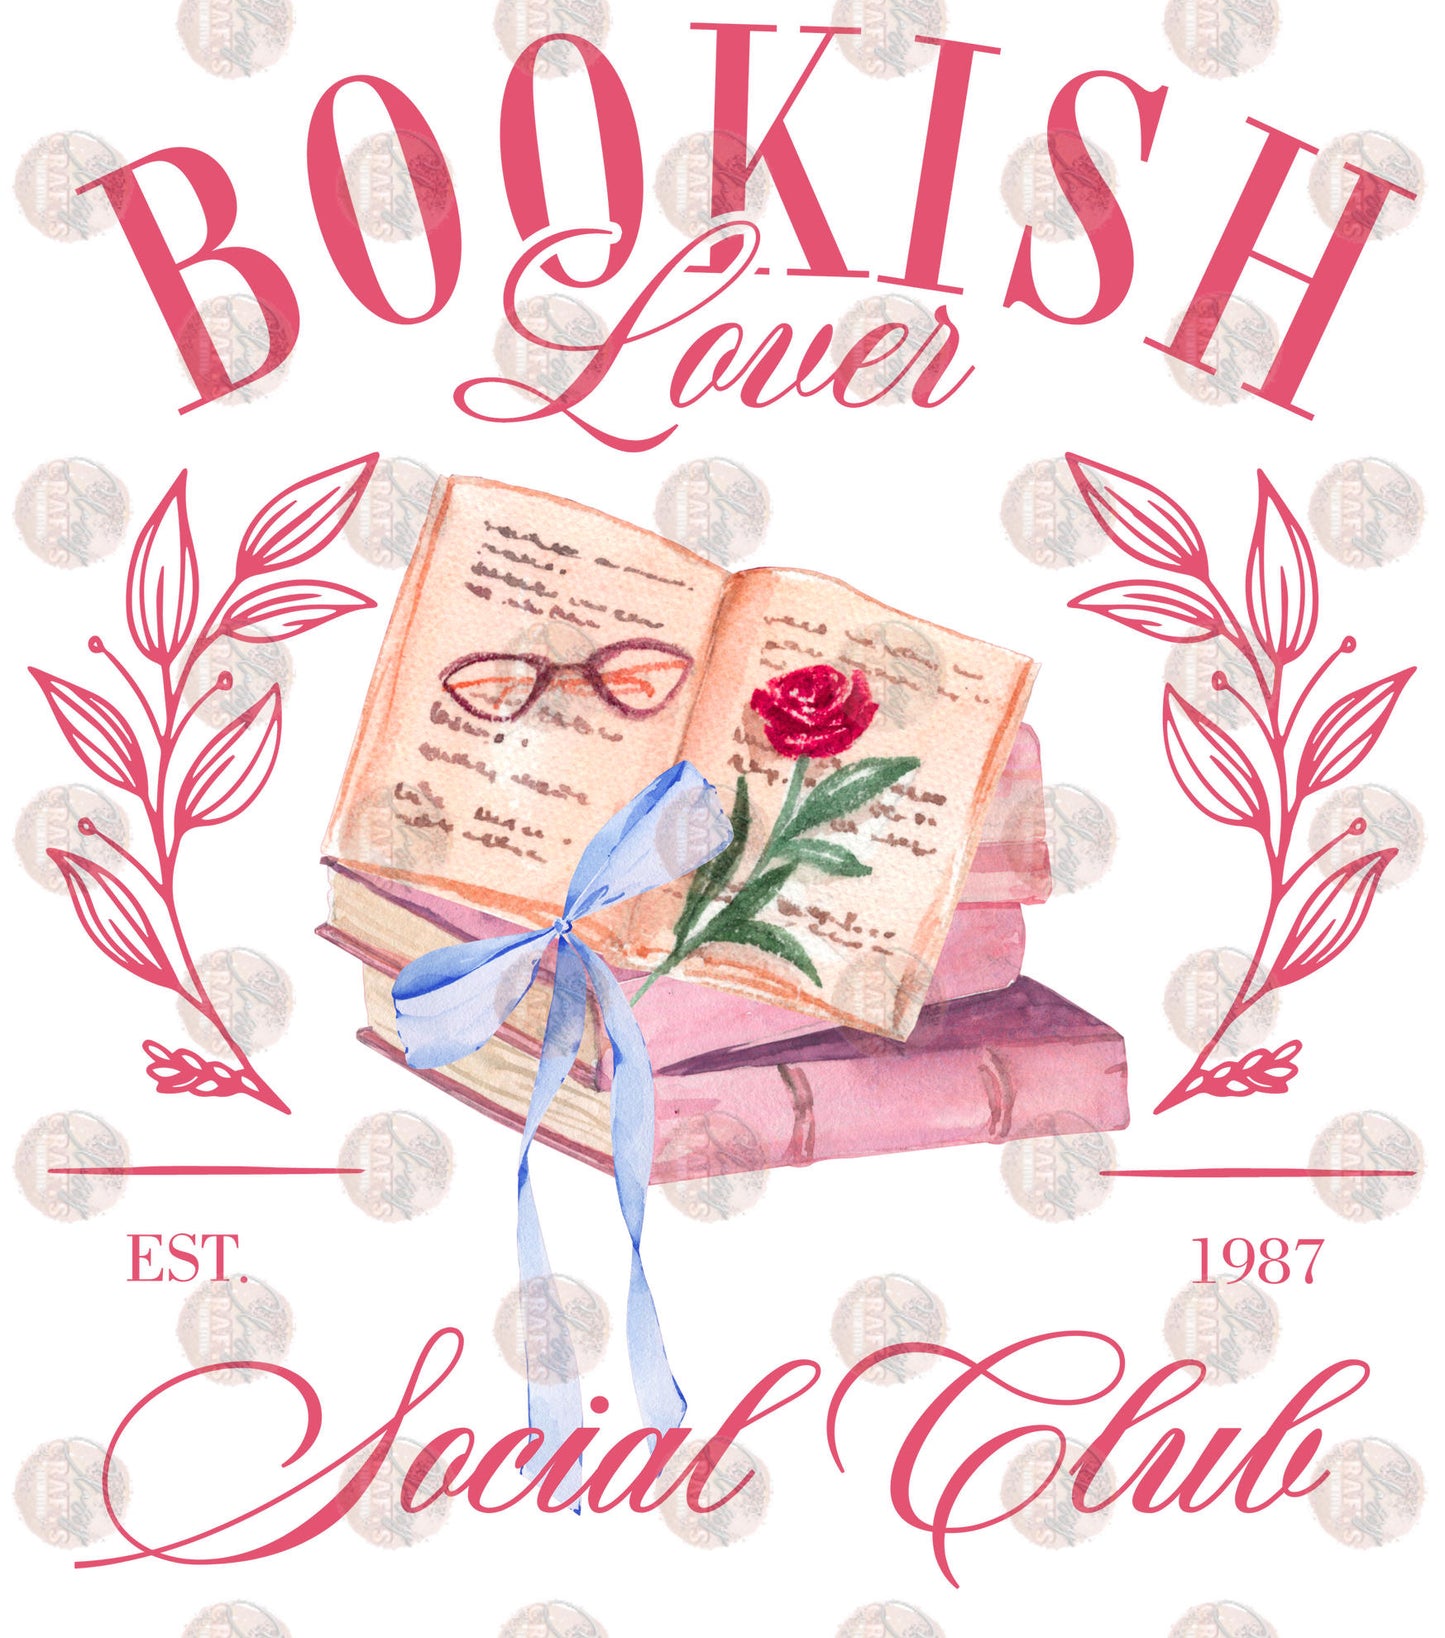 Bookish Lover Transfer